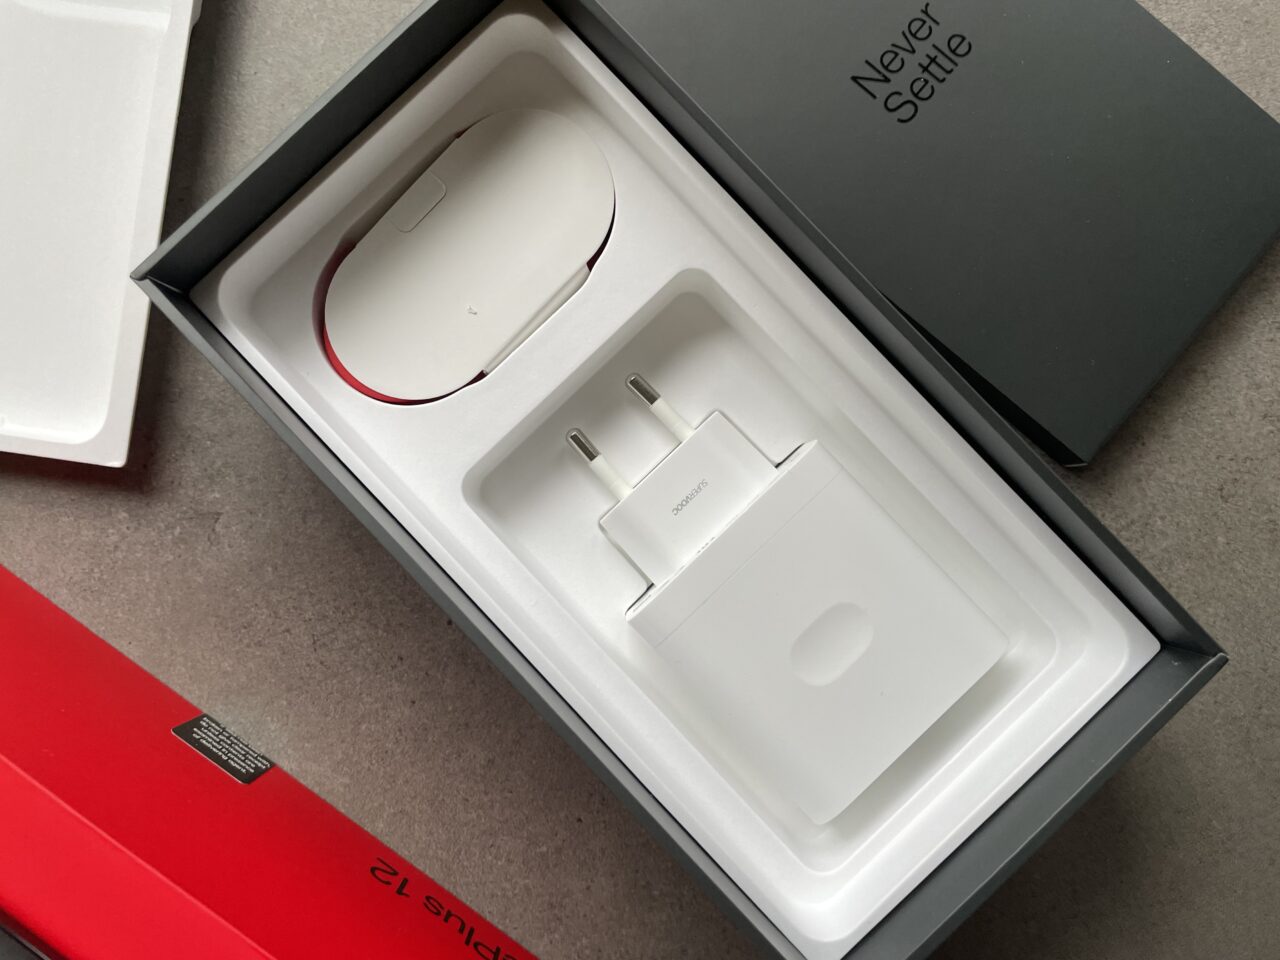 Białe pudełko z akcesoriami elektronicznymi, w tym bielą myszką komputerową z czerwonym akcentem i białą ładowarką sieciową, obok czarnego pudełka z napisem "Never Settle".